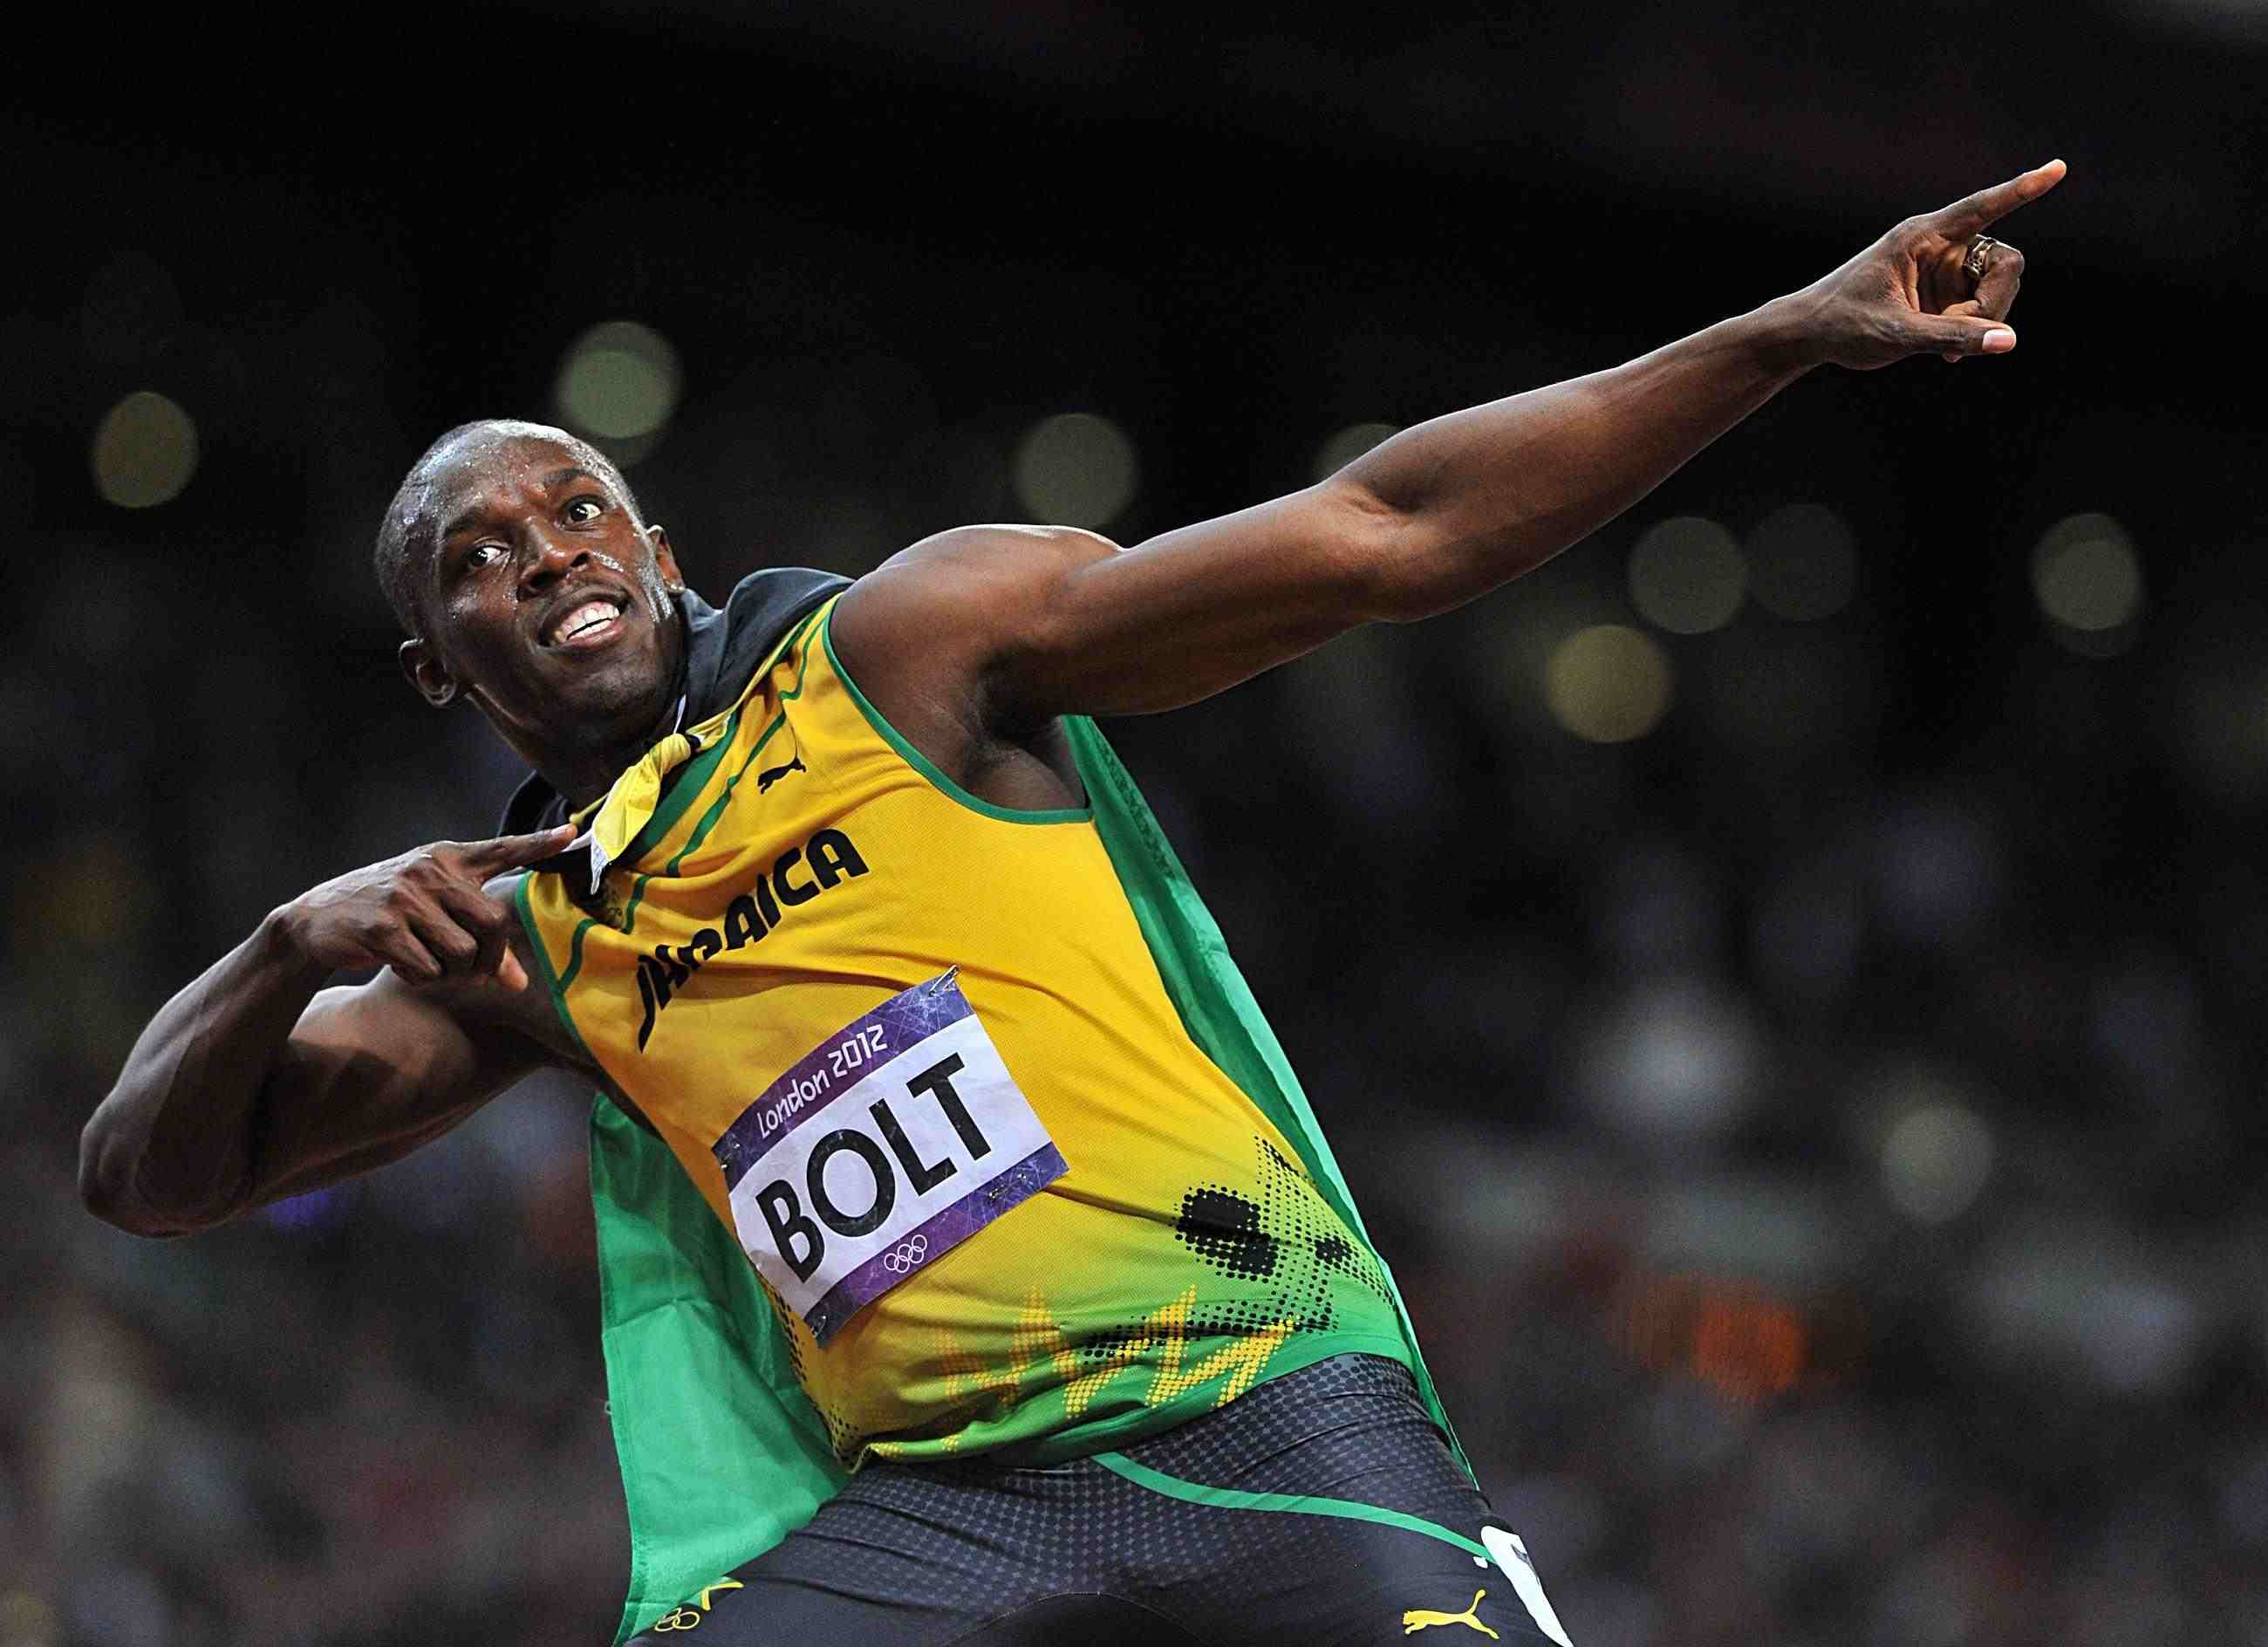 10 coisas que uma pessoa pode fazer com o mesmo tempo que Bolt vence uma corrida 